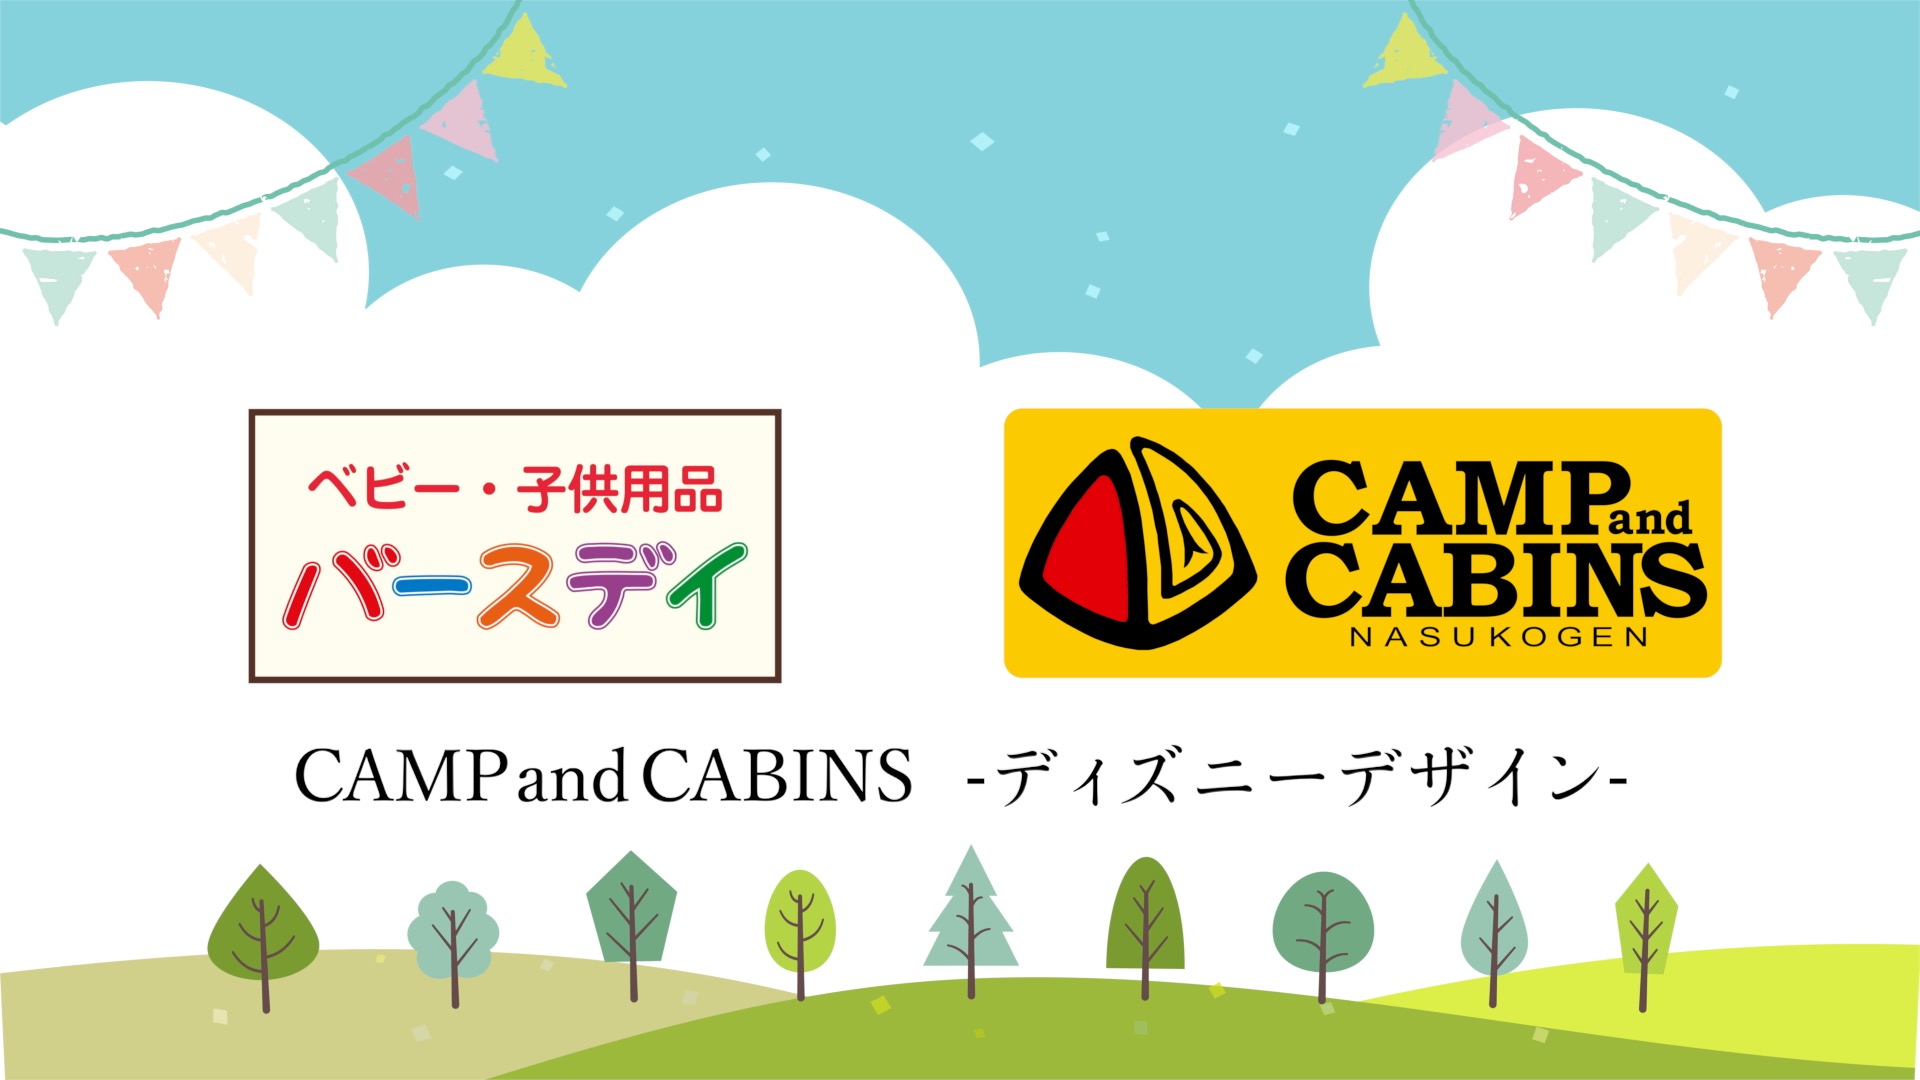 栃木県那須高原発 Camp Cabins のディズニーデザイン商品がベビー 子供用品 バースデイ から発売 モリリン株式会社のプレスリリース